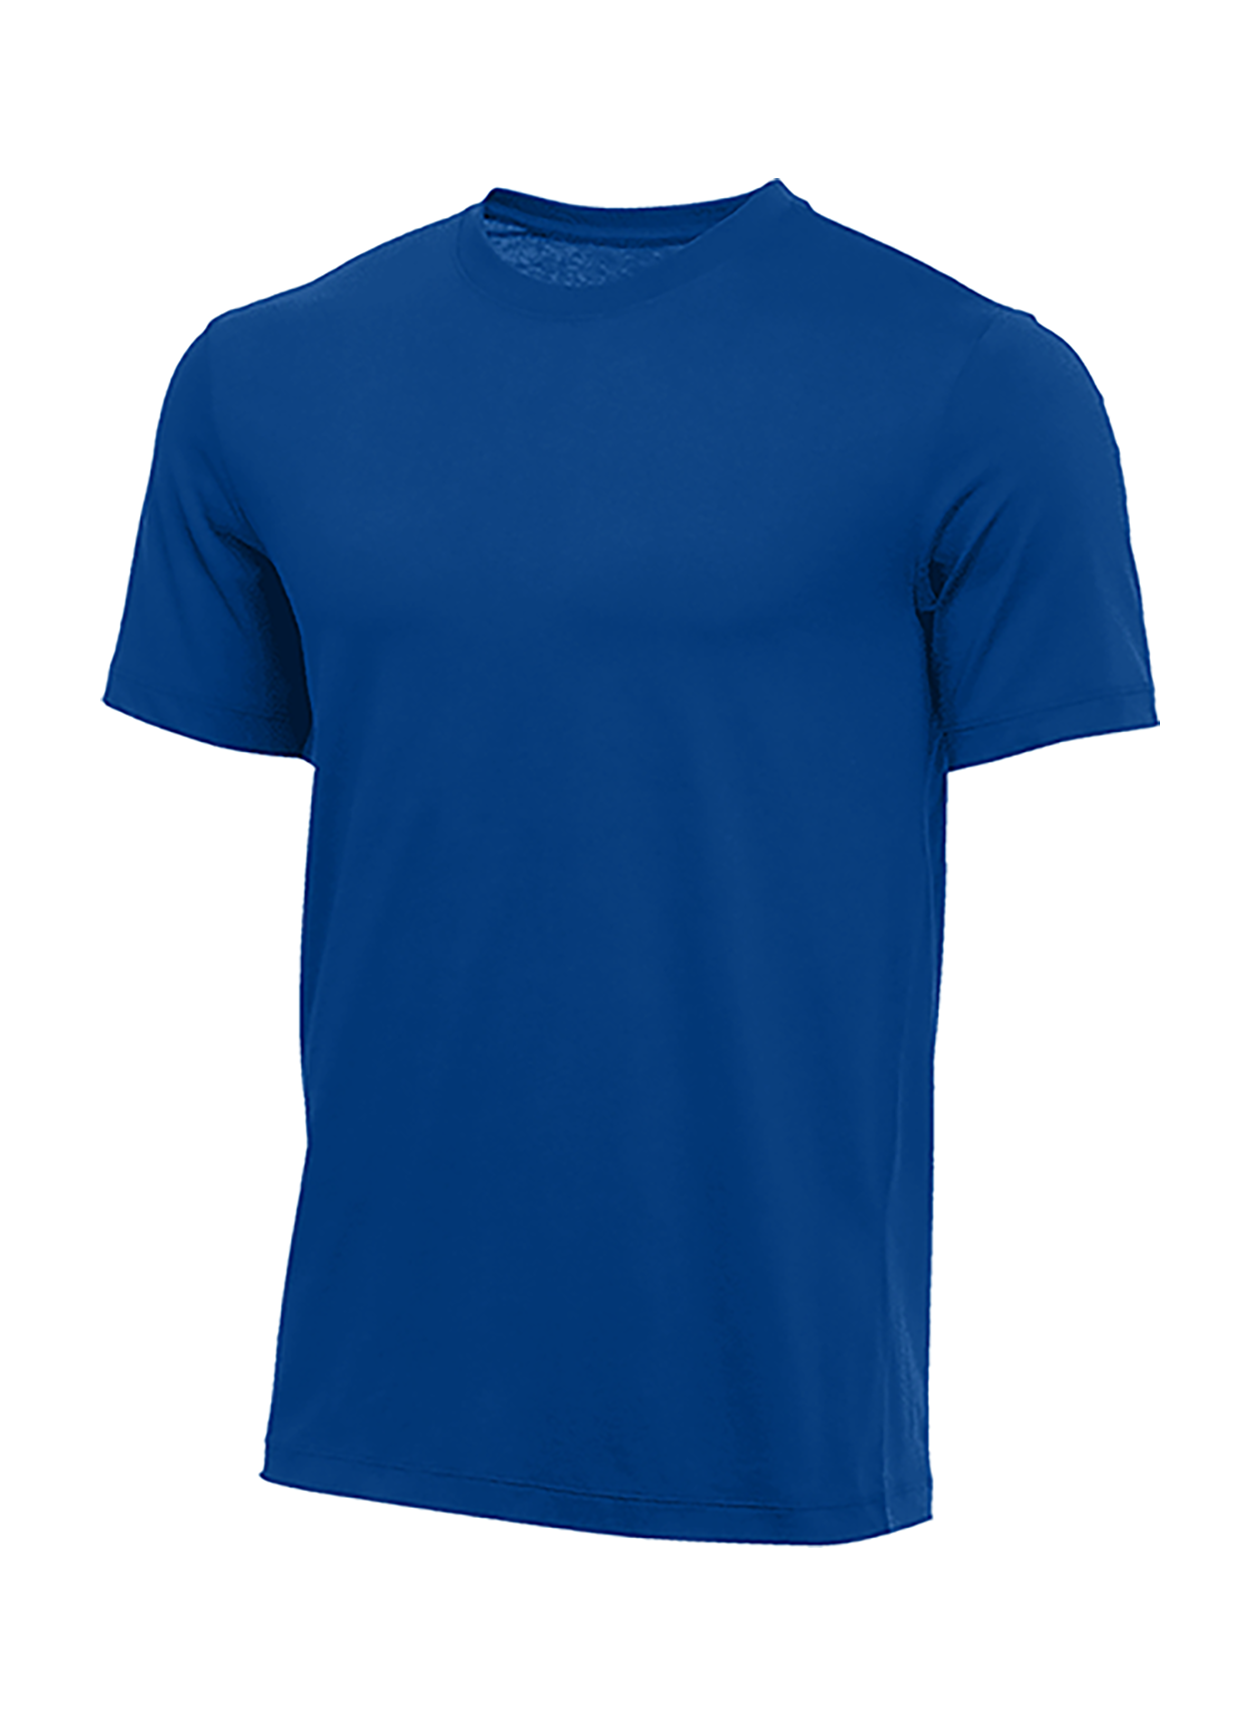 Nike Men's Game Royal Training T-Shirt